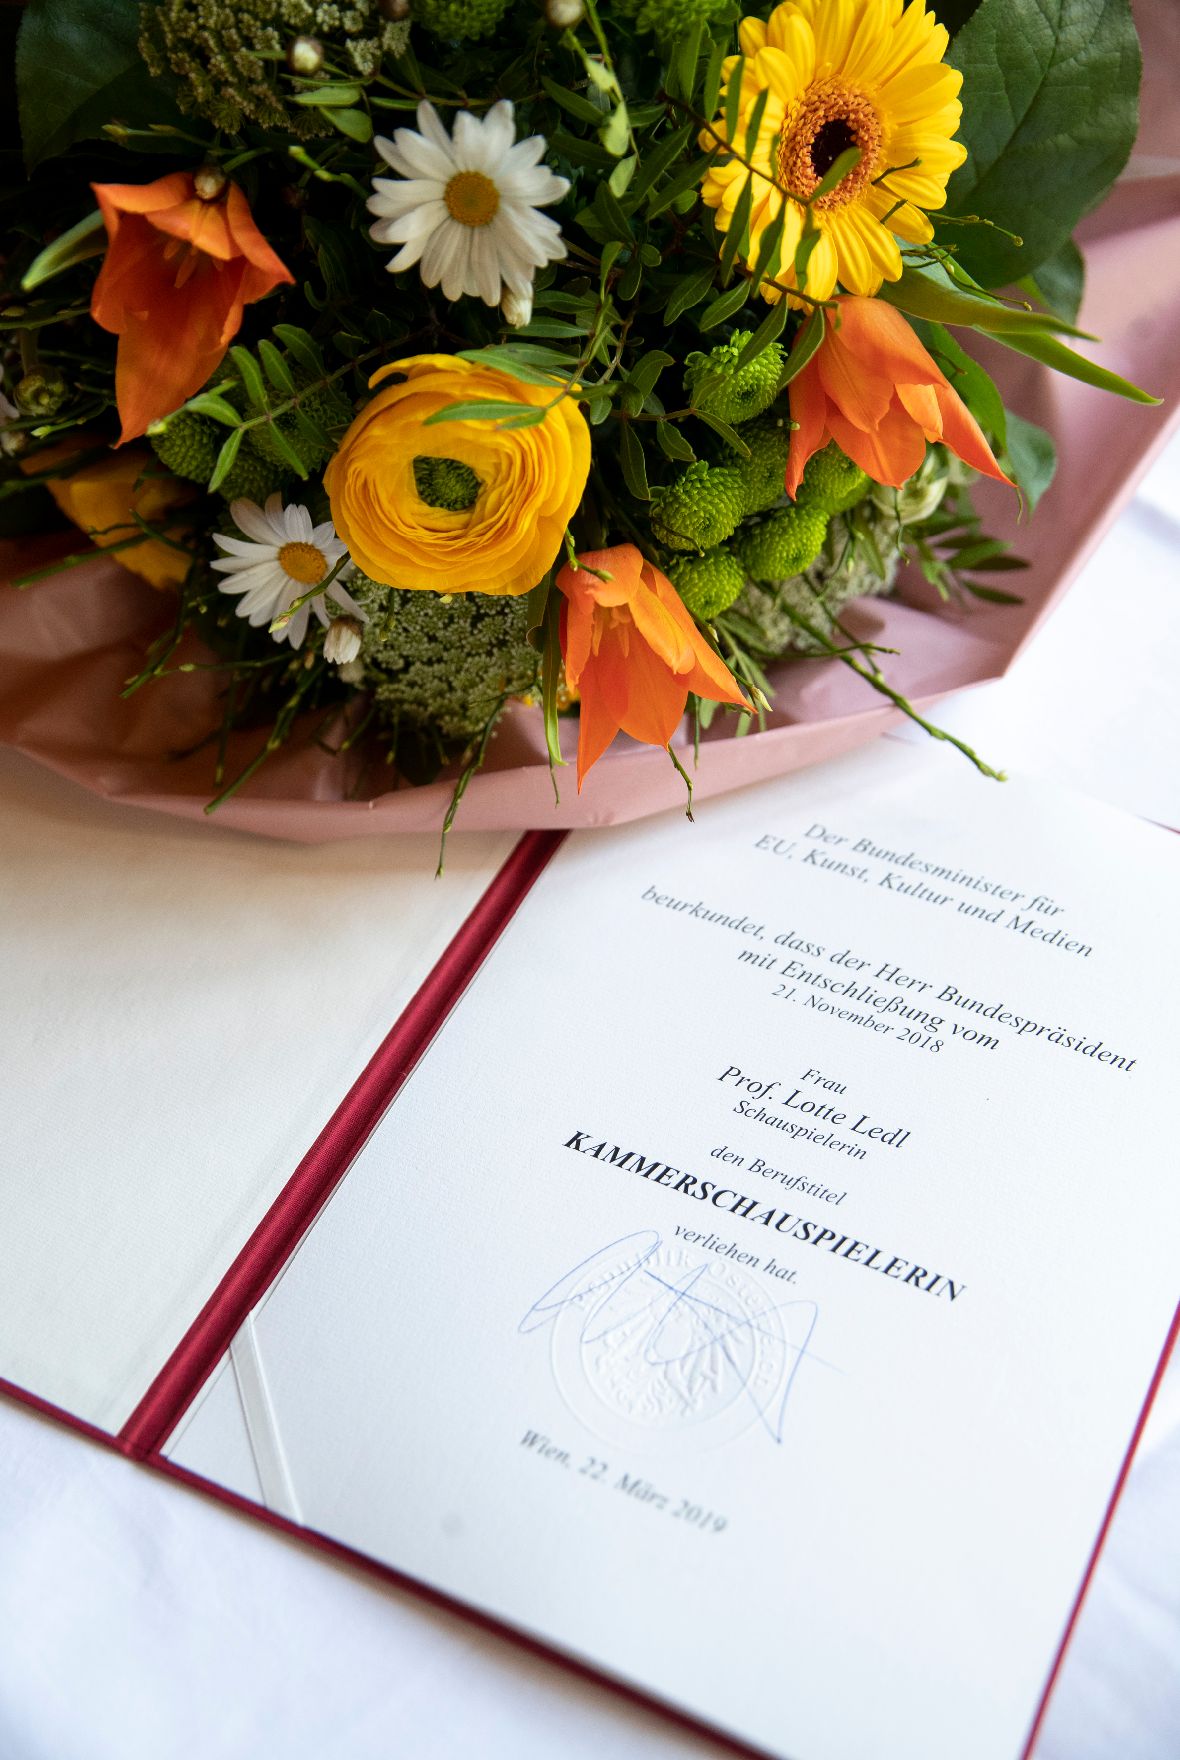 Am 22. März 2019 überreichte Sektionschef Jürgen Meindl die Urkunde, mit der Lotte Ledl der Berufstitel Kammerschauspielerin verliehen wurde.